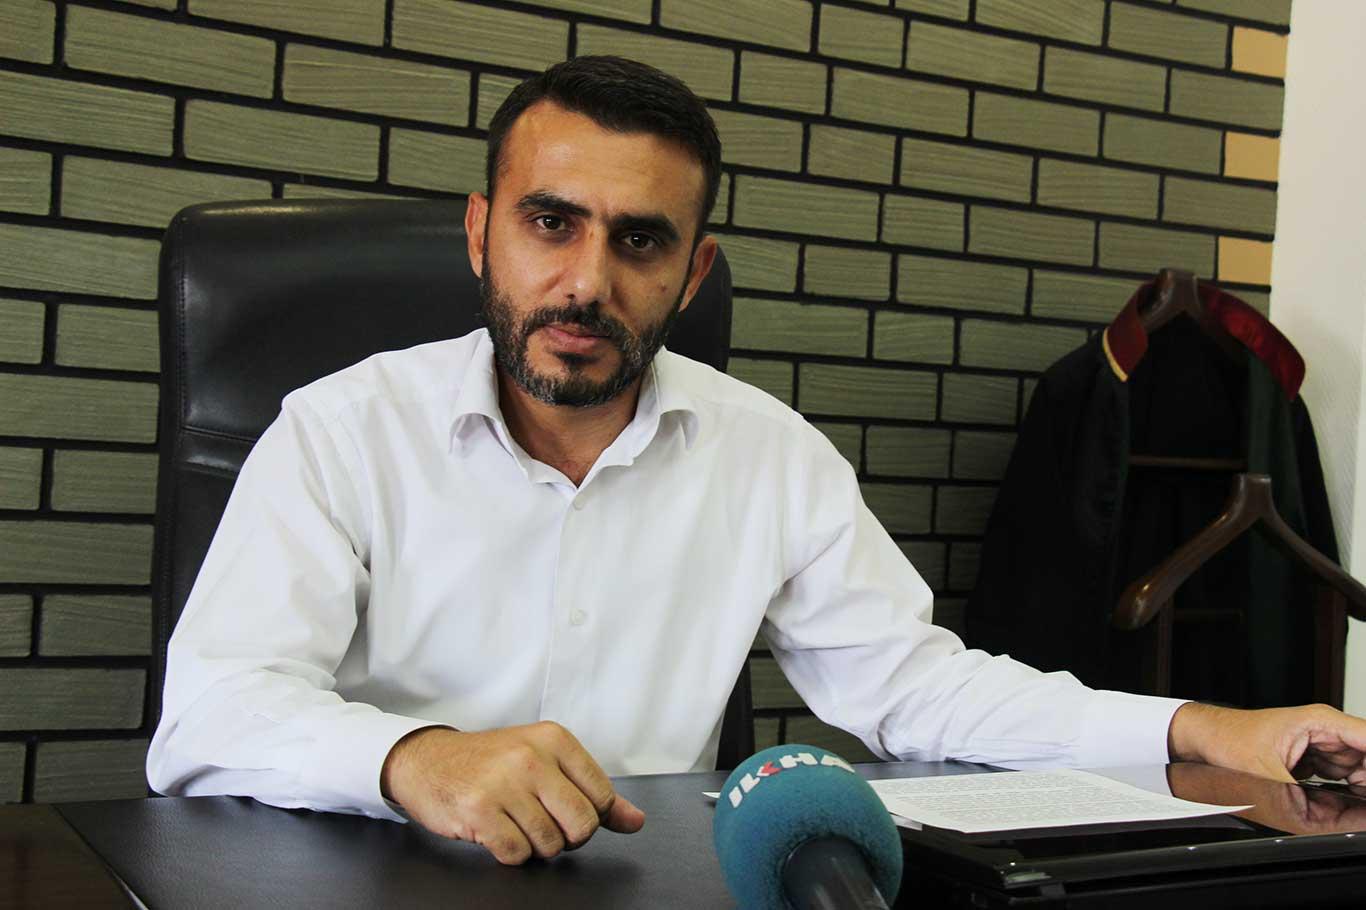 Avukat Engin Alanoğlu "Çoklu Baro Sistemi" ile ilgili değerlendirmelerde bulundu